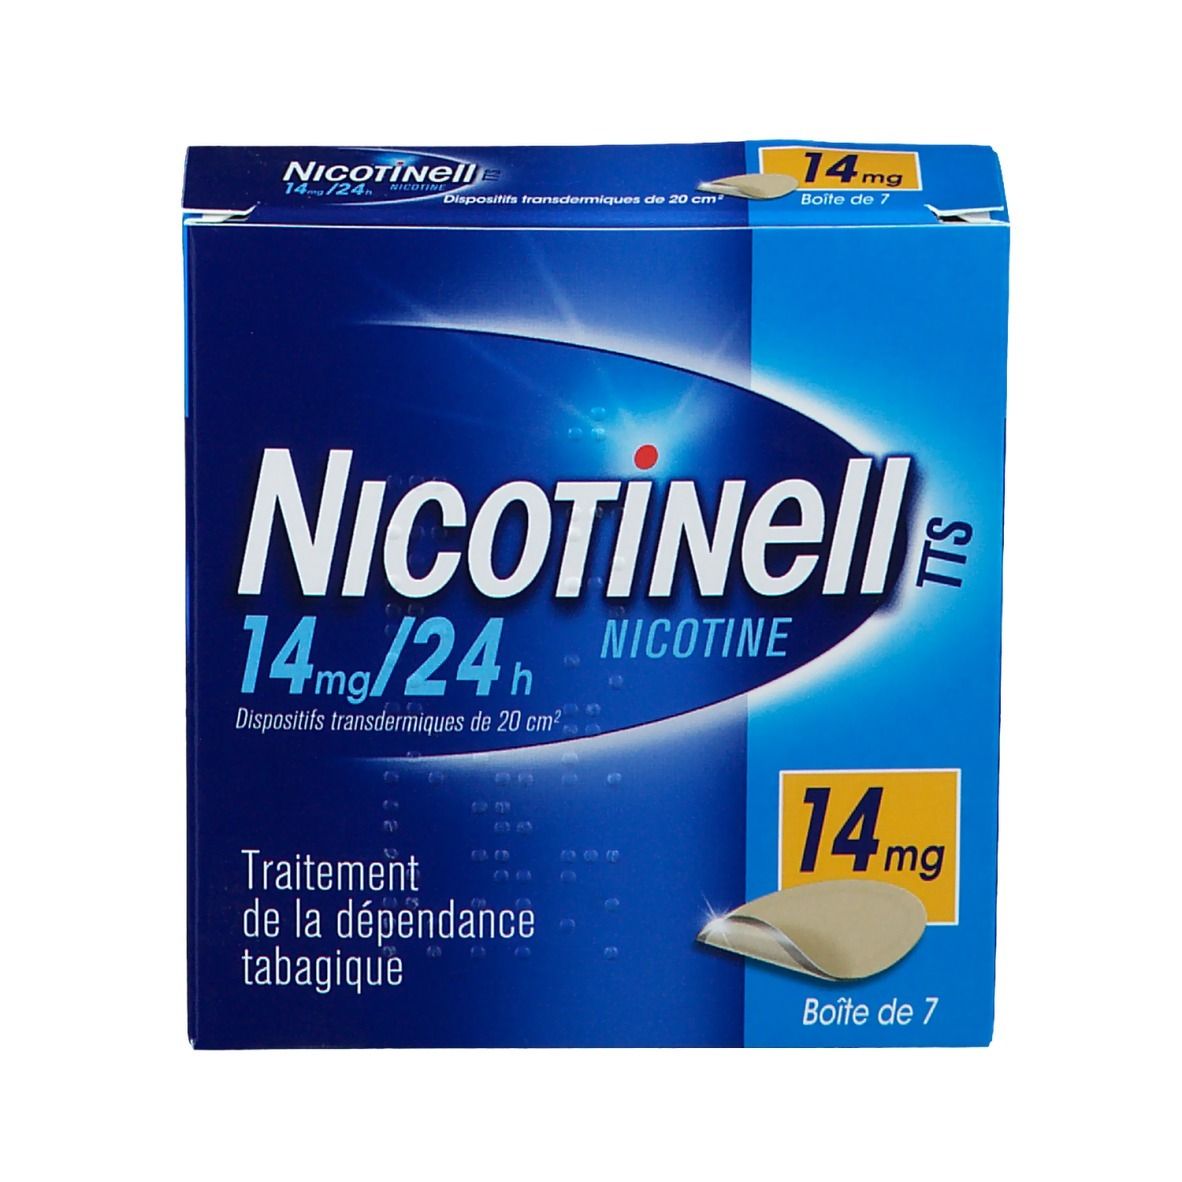 Nicotinell® 14 mg/24h